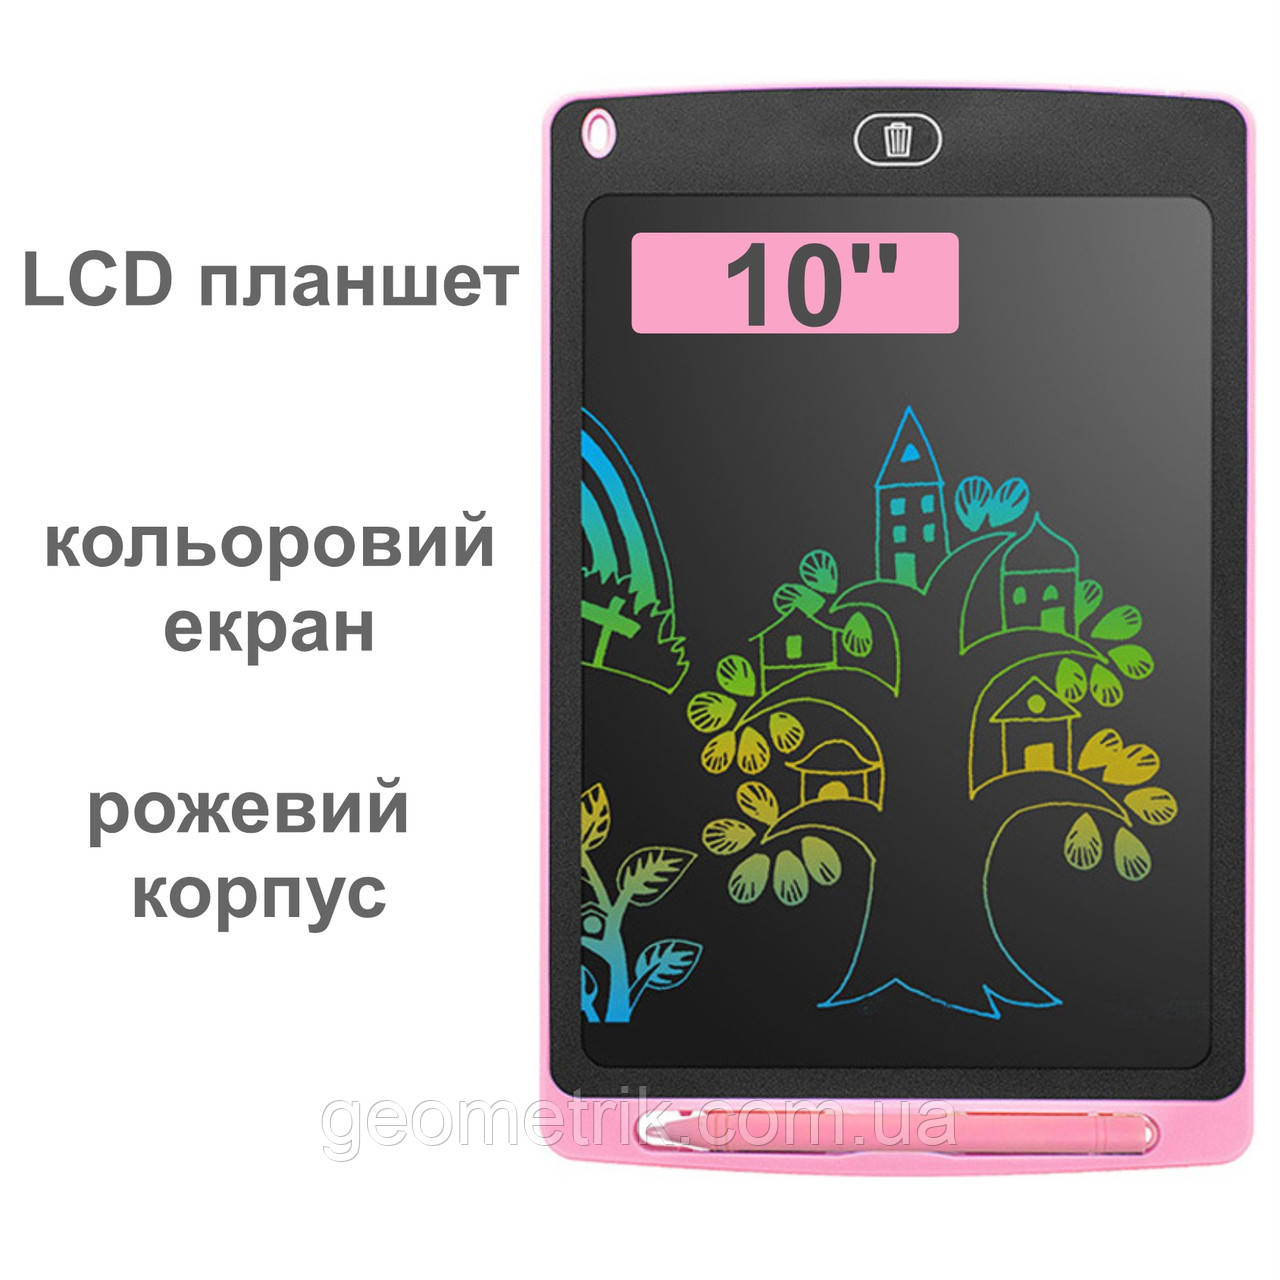 Графічний LCD планшет для малювання 10'' | кольоровий ЖК планшет | рожевий